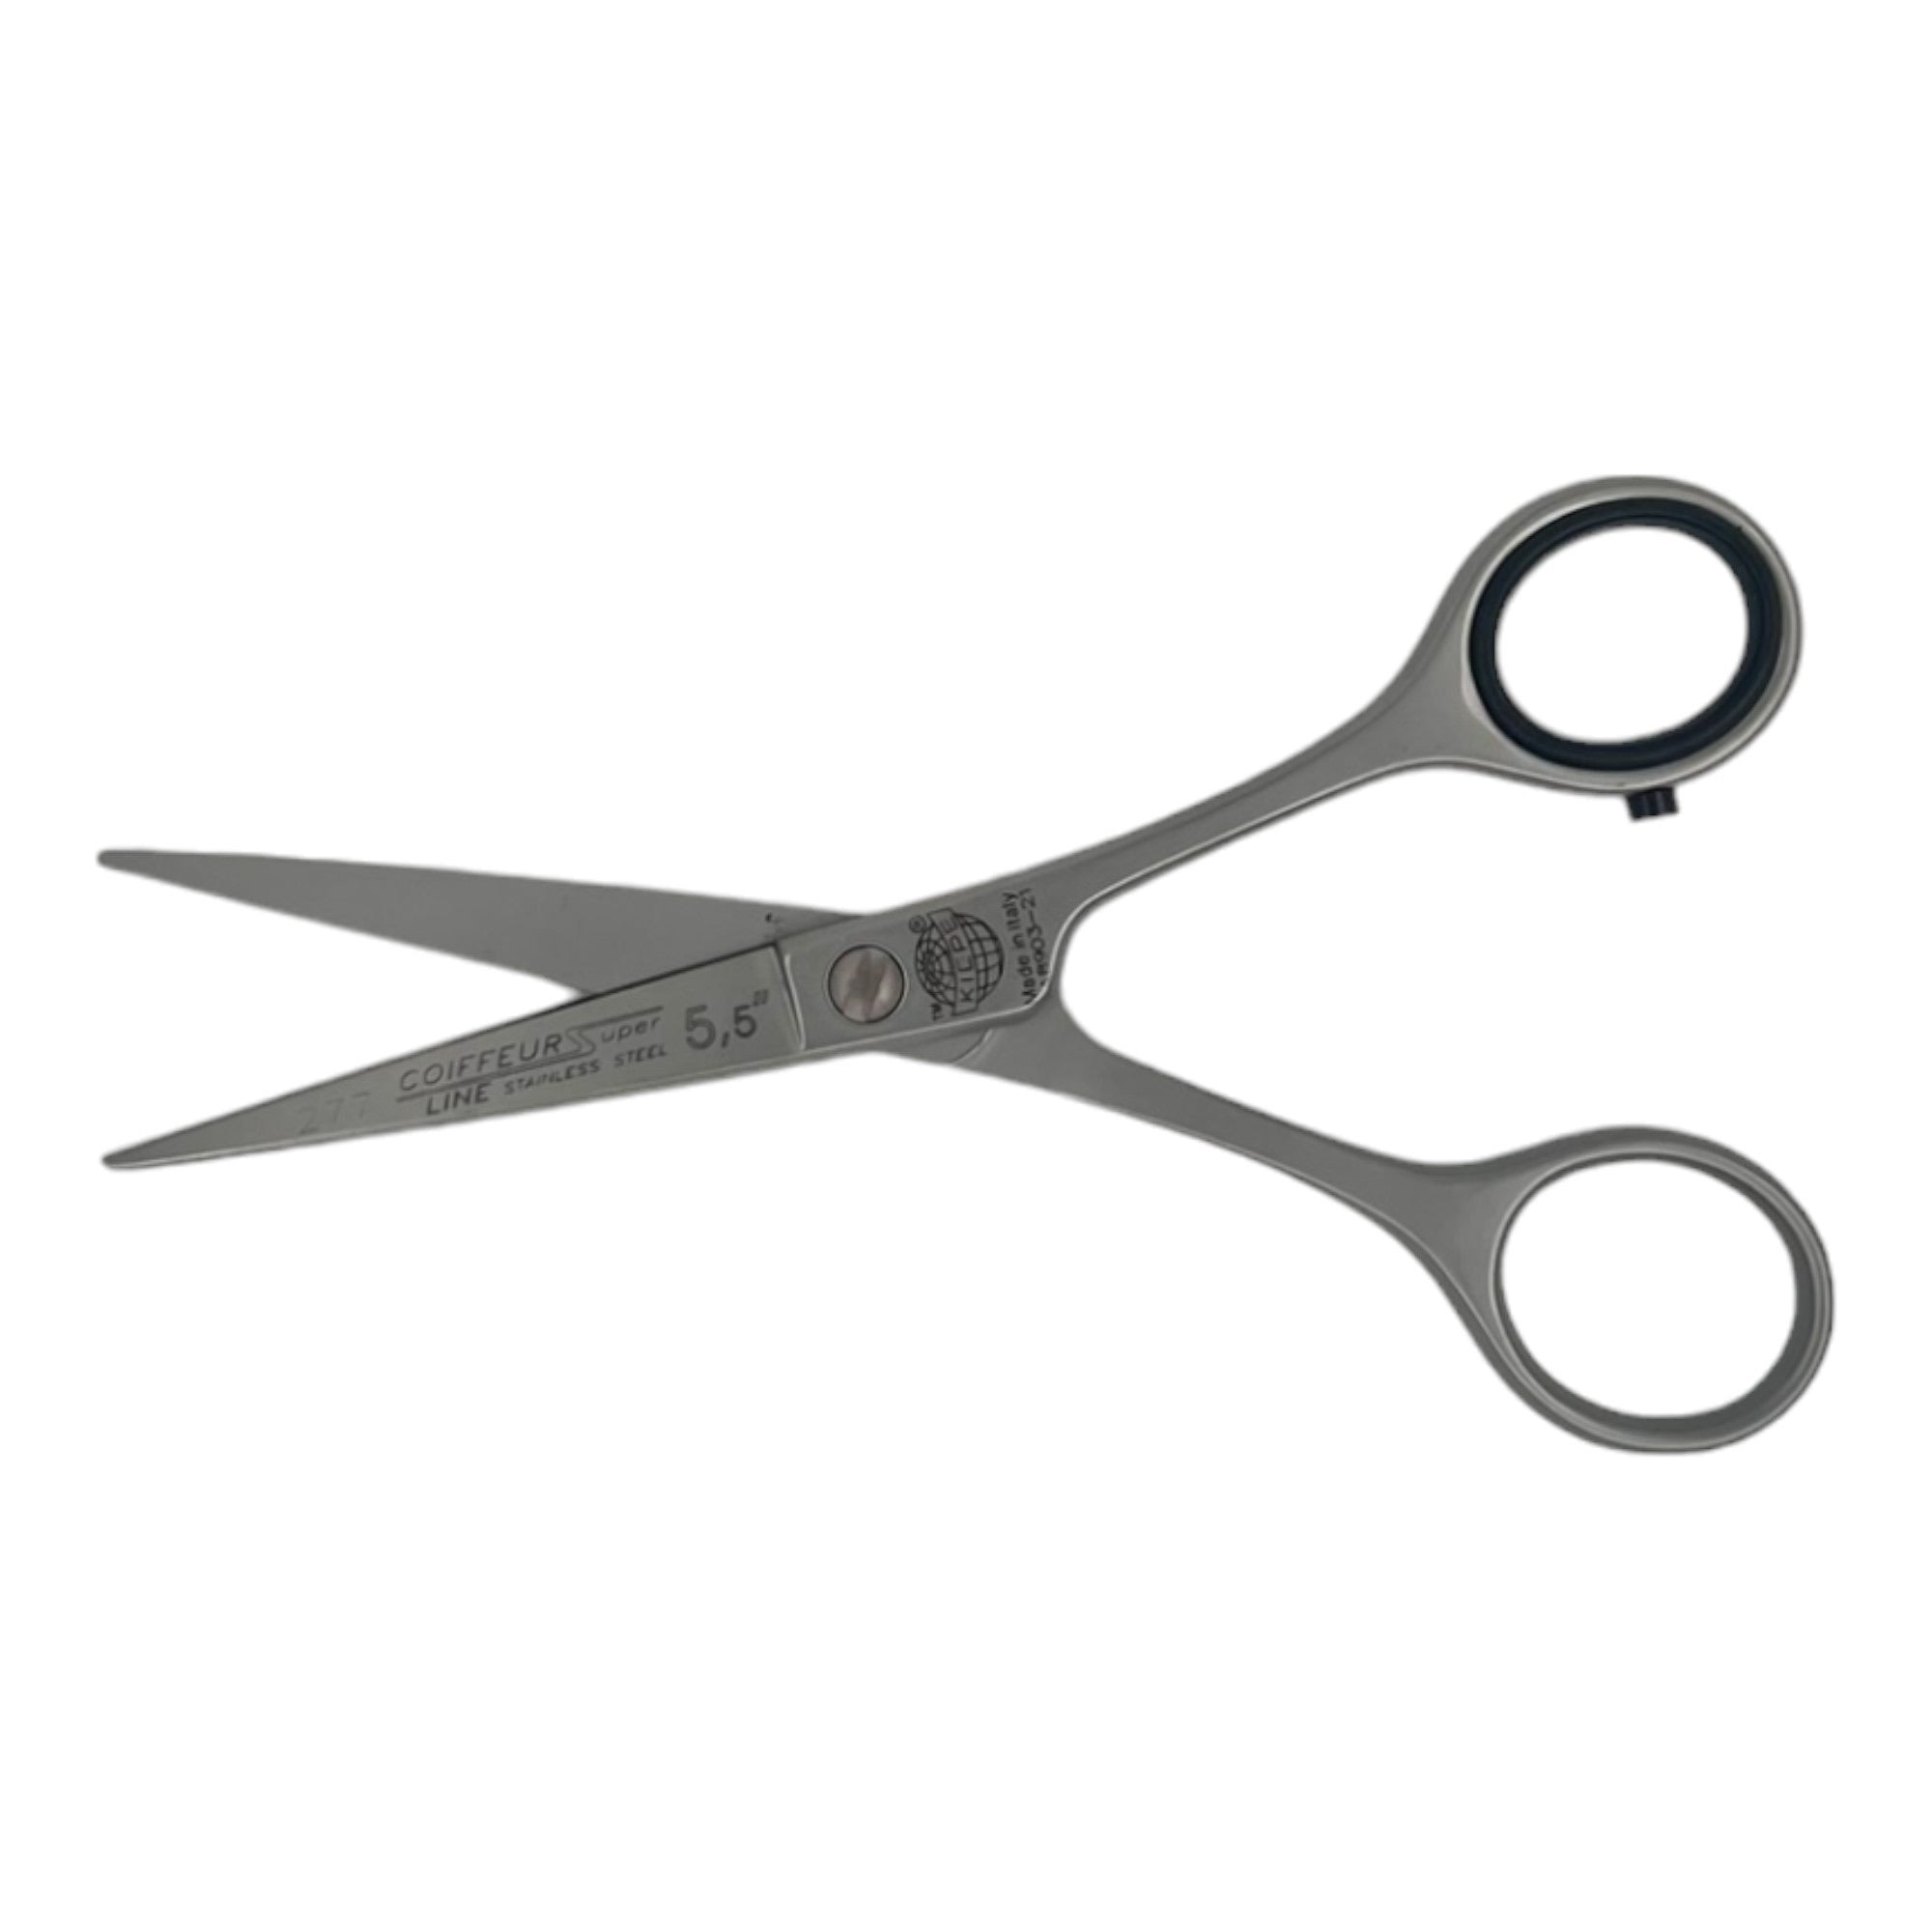 Kiepe - 277 Coiffeur Super Line Scissors 5.5 Inch (14cm)